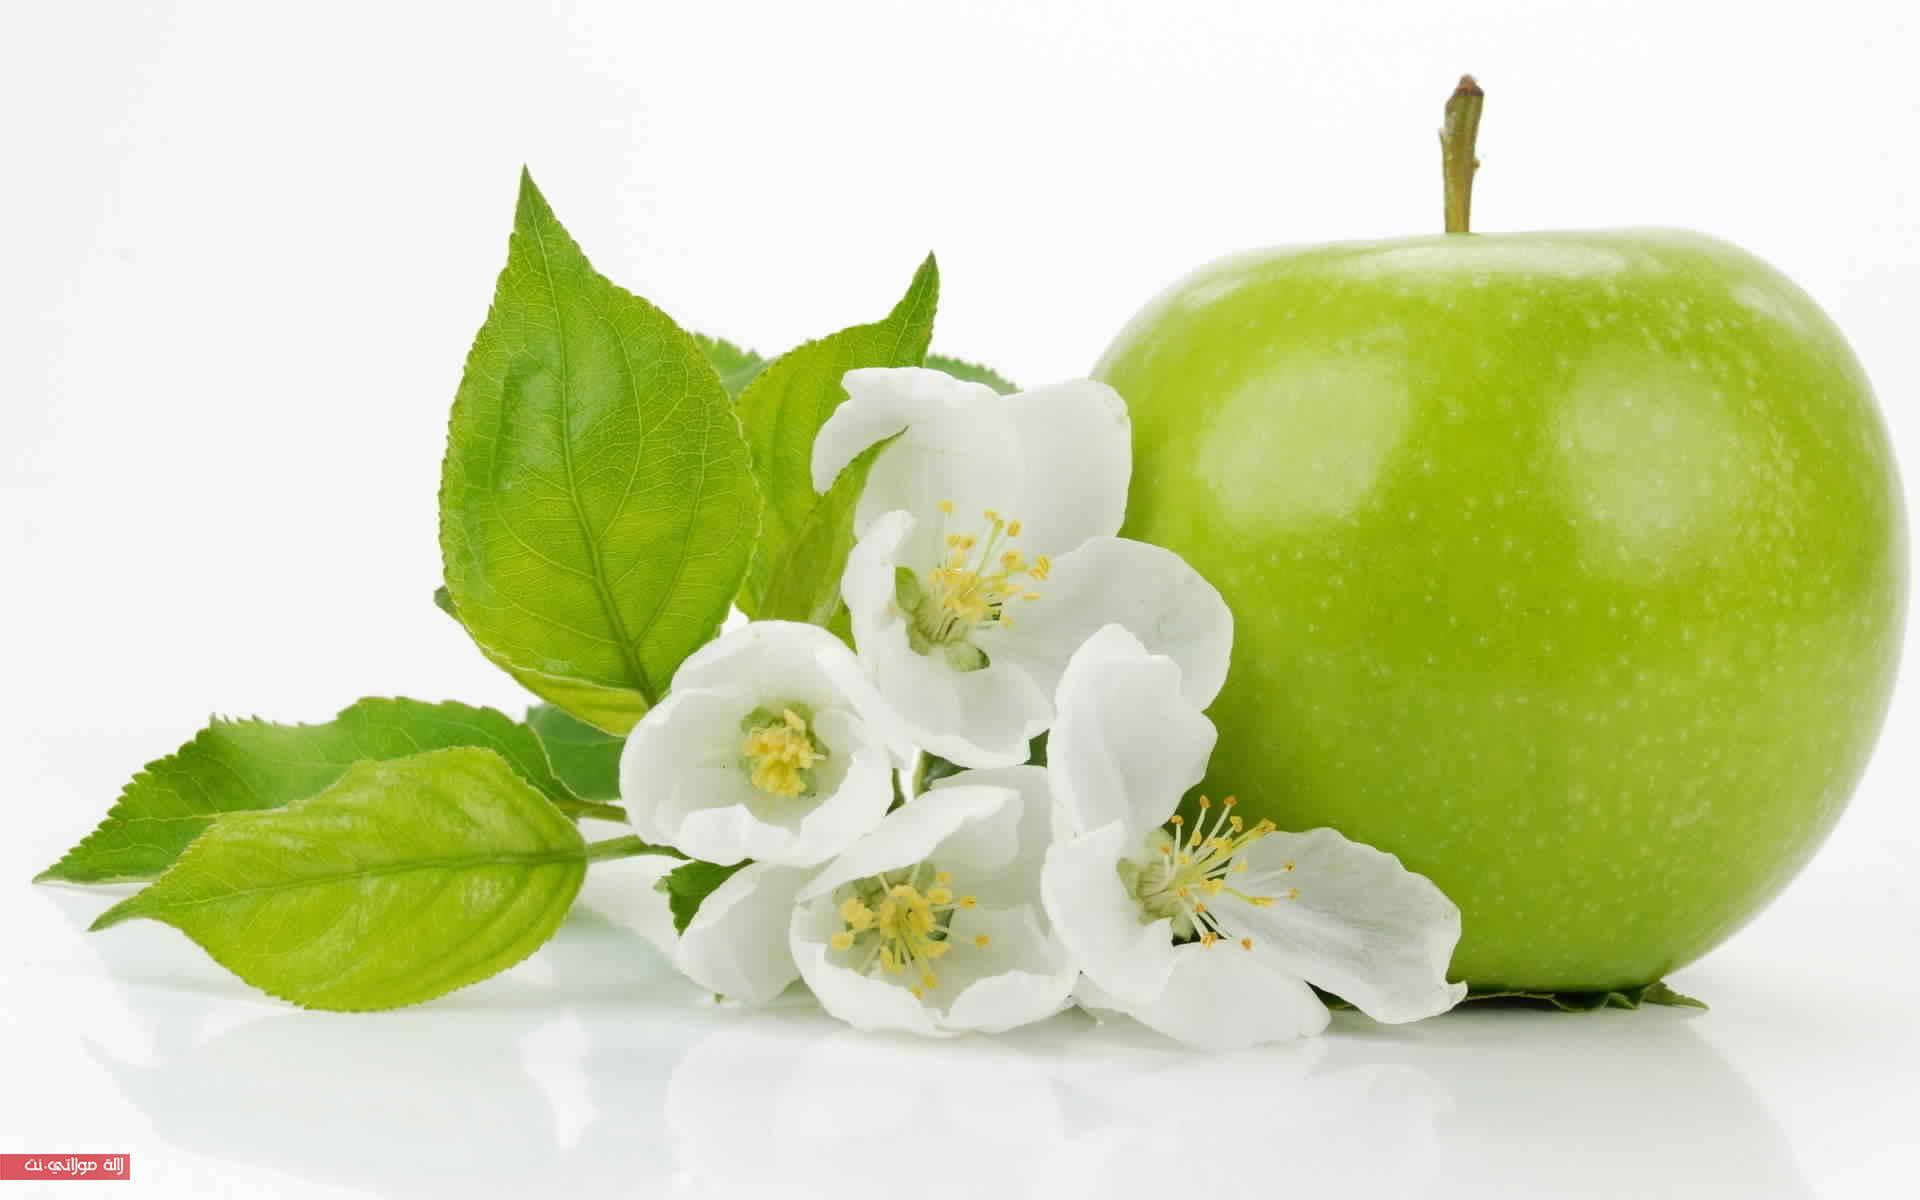 التفاح-فوائد-صحية-و-جمالية-لا-متناهية